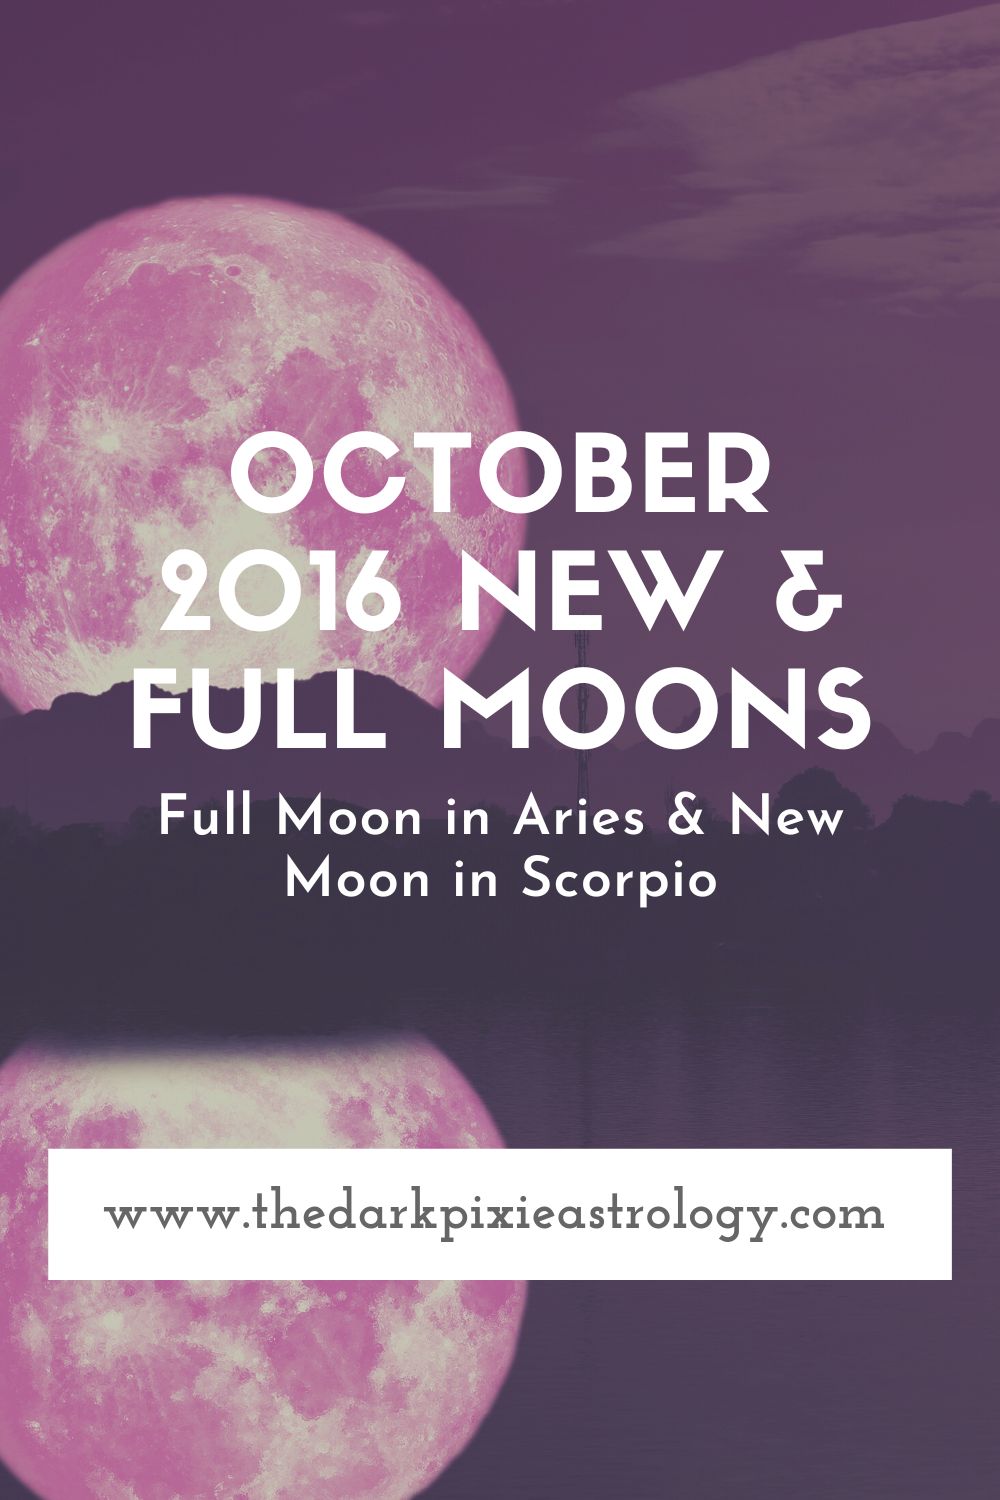 October 2016 New & Full Moons - The Dark Pixie Astrology